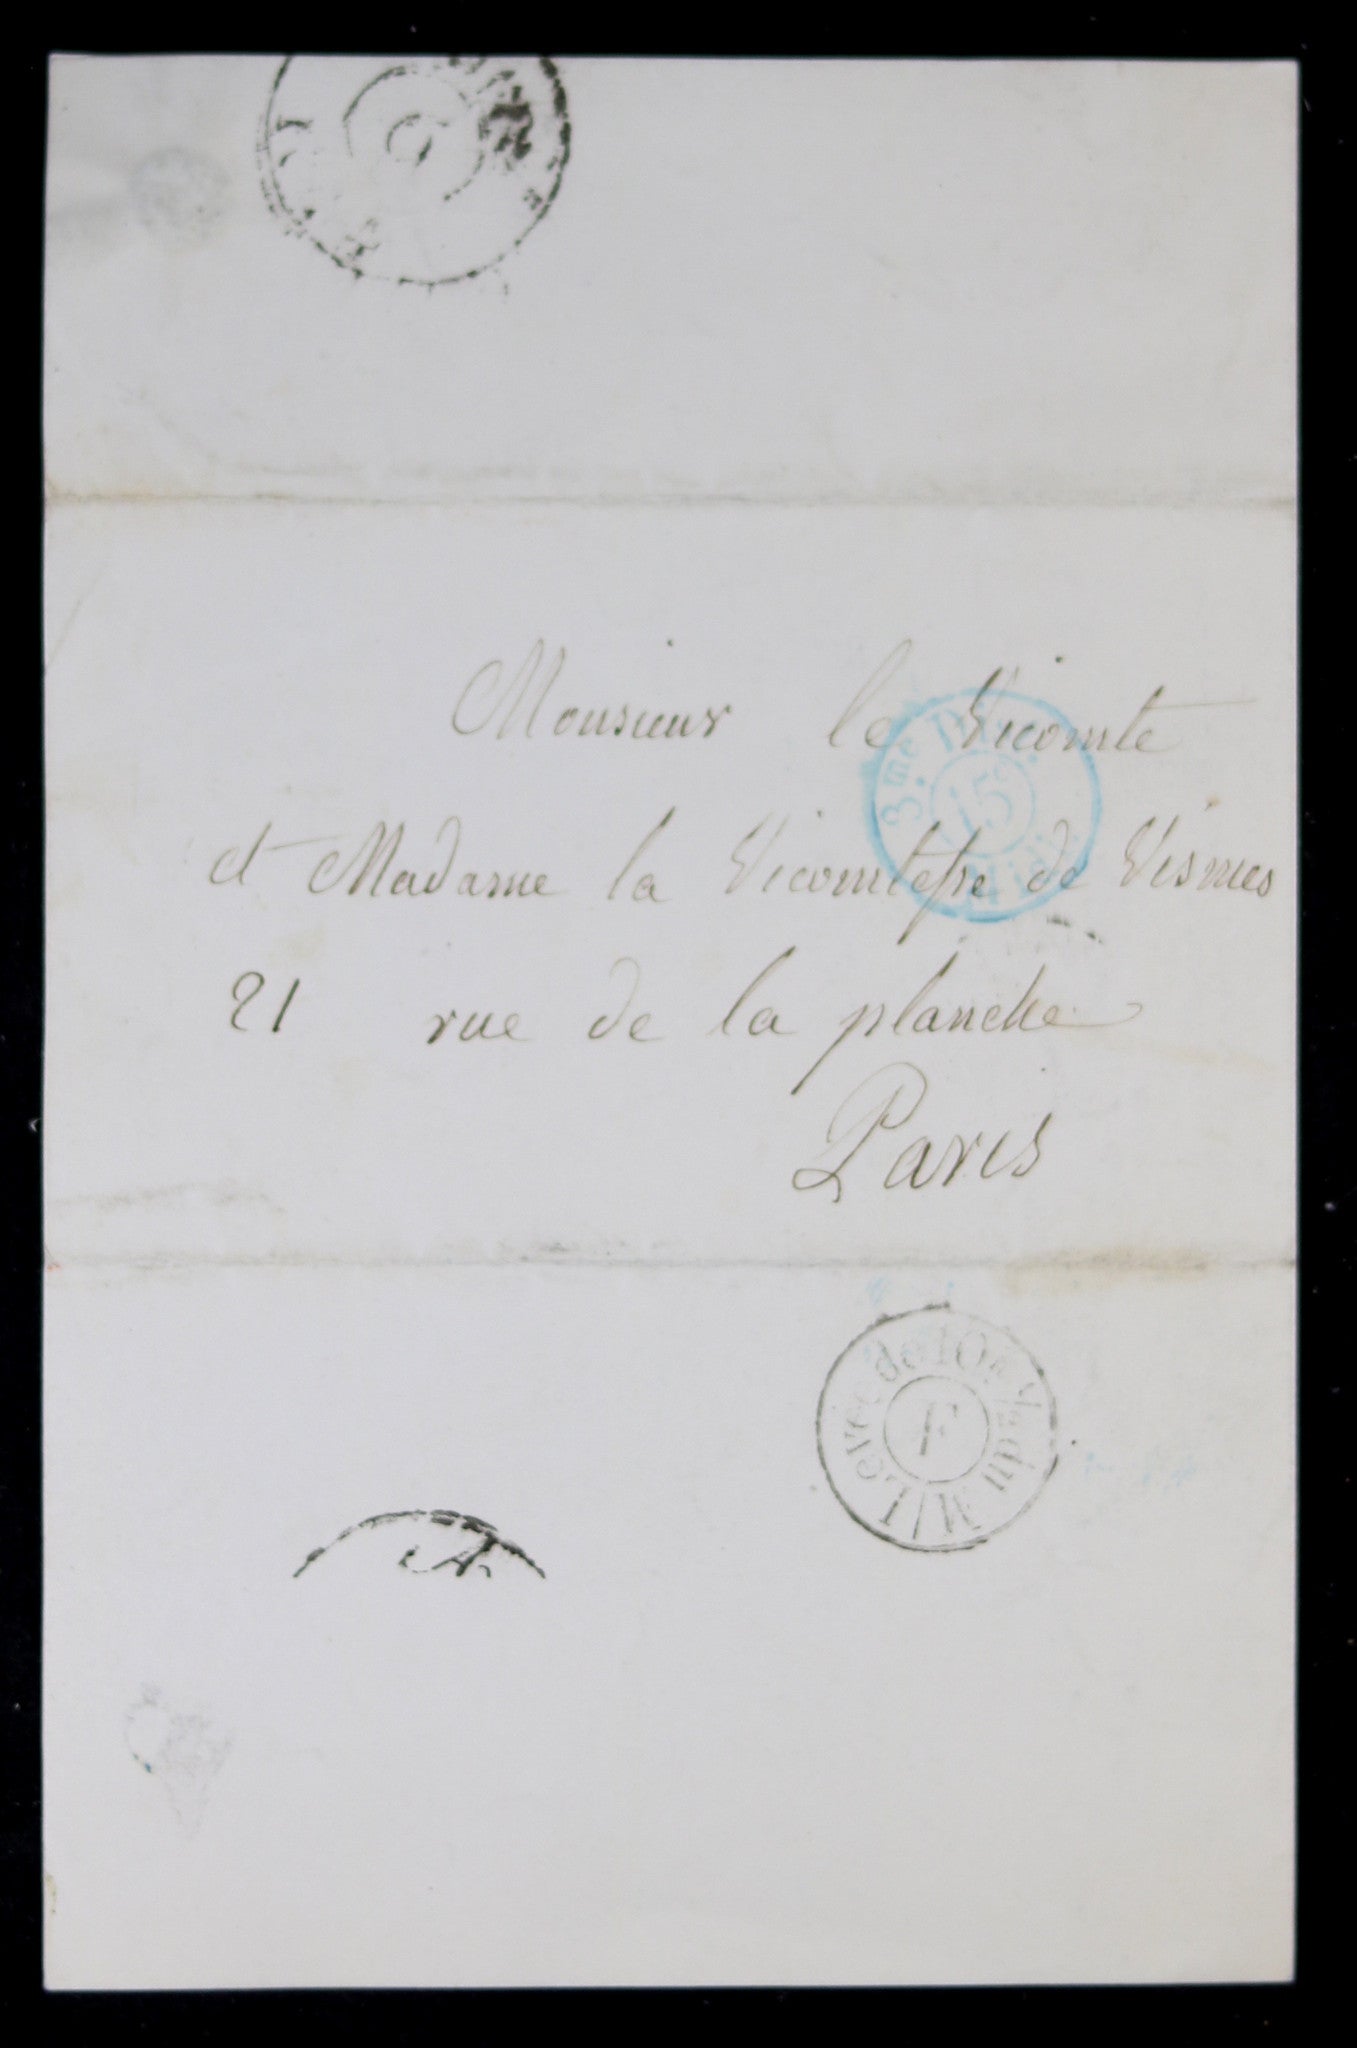 1844 invitation Vicomte et Vicomtesse Wismes à soirée dansante